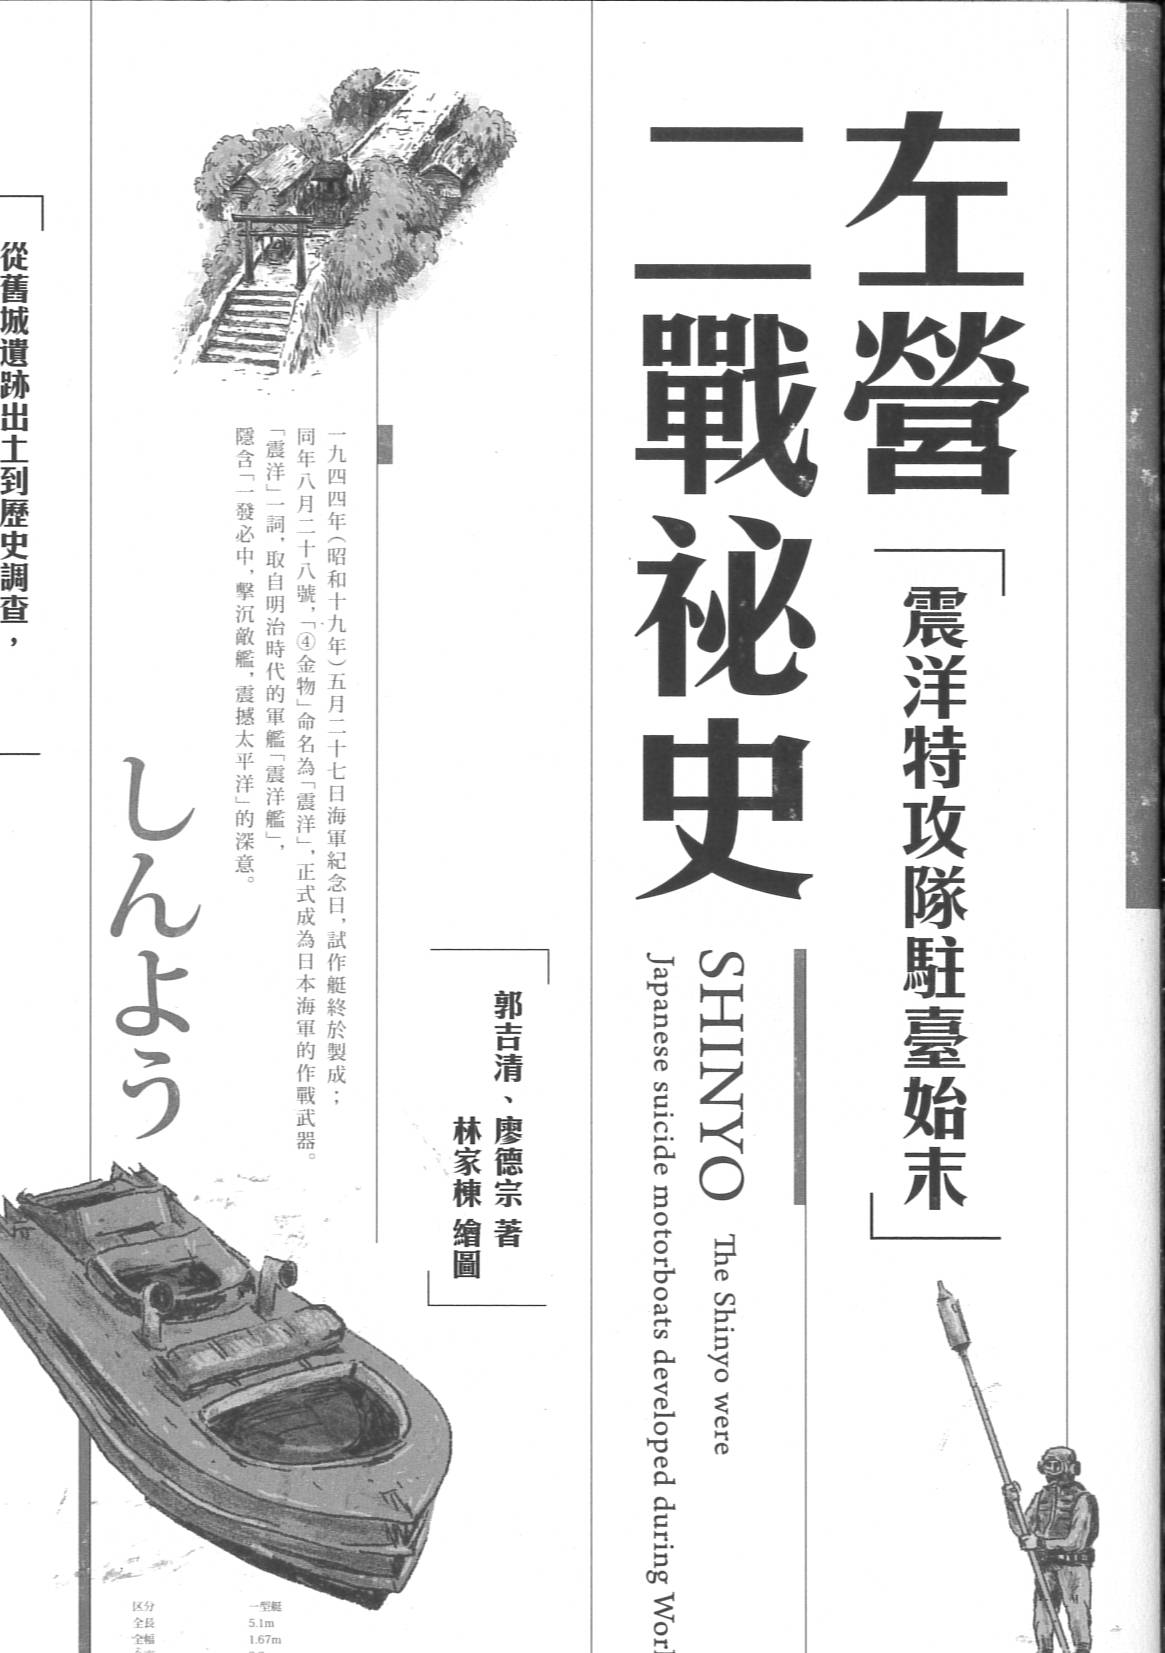 左營二戰祕史 : 「震洋特攻隊駐臺始末」 = Shinyo : the Shinyo were Japanese suicide motorboats developed during World War II. /